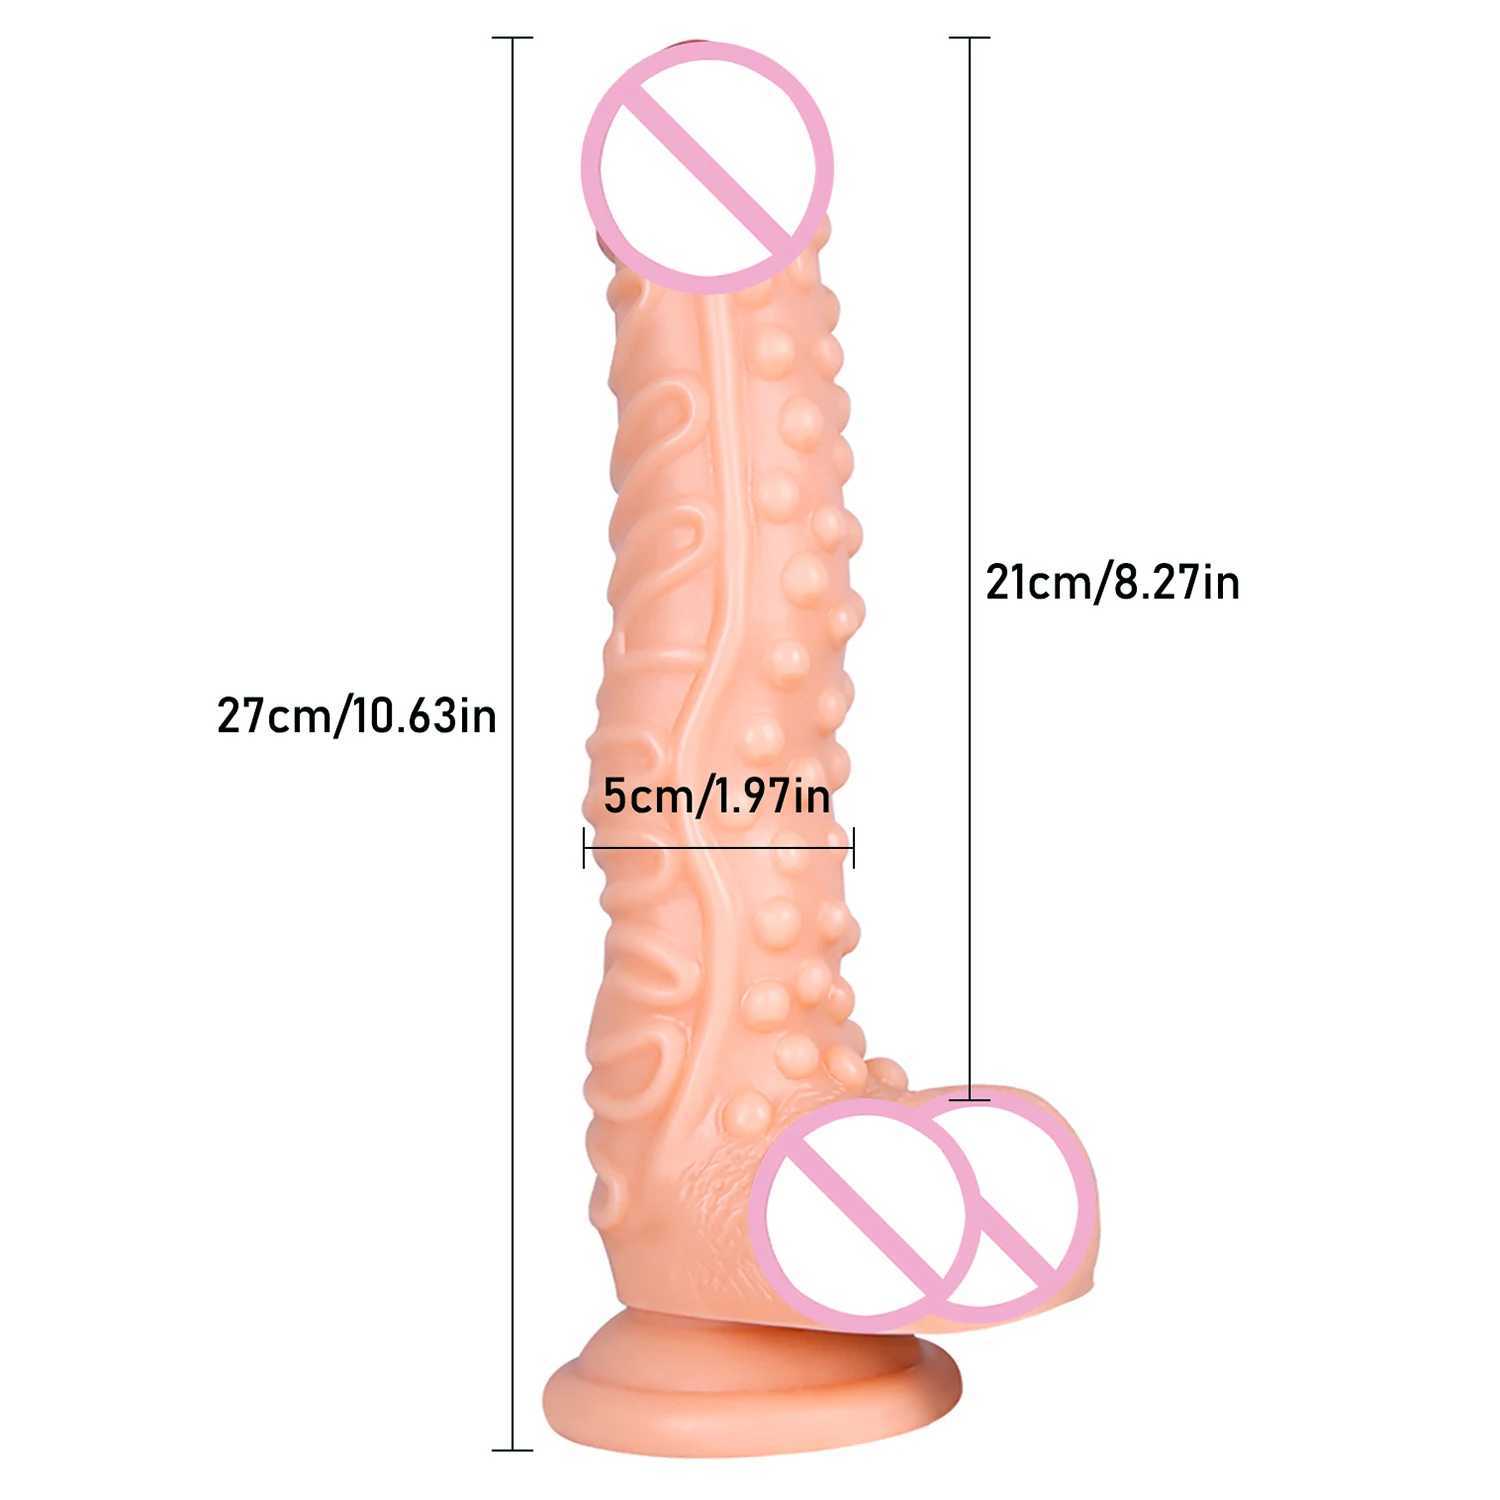 nxy dildos dongs sex products strap on than galls big phallus Elastic Pants dickウェアラブル女性レズビアン240330の巨大なペニスセックスおもちゃ